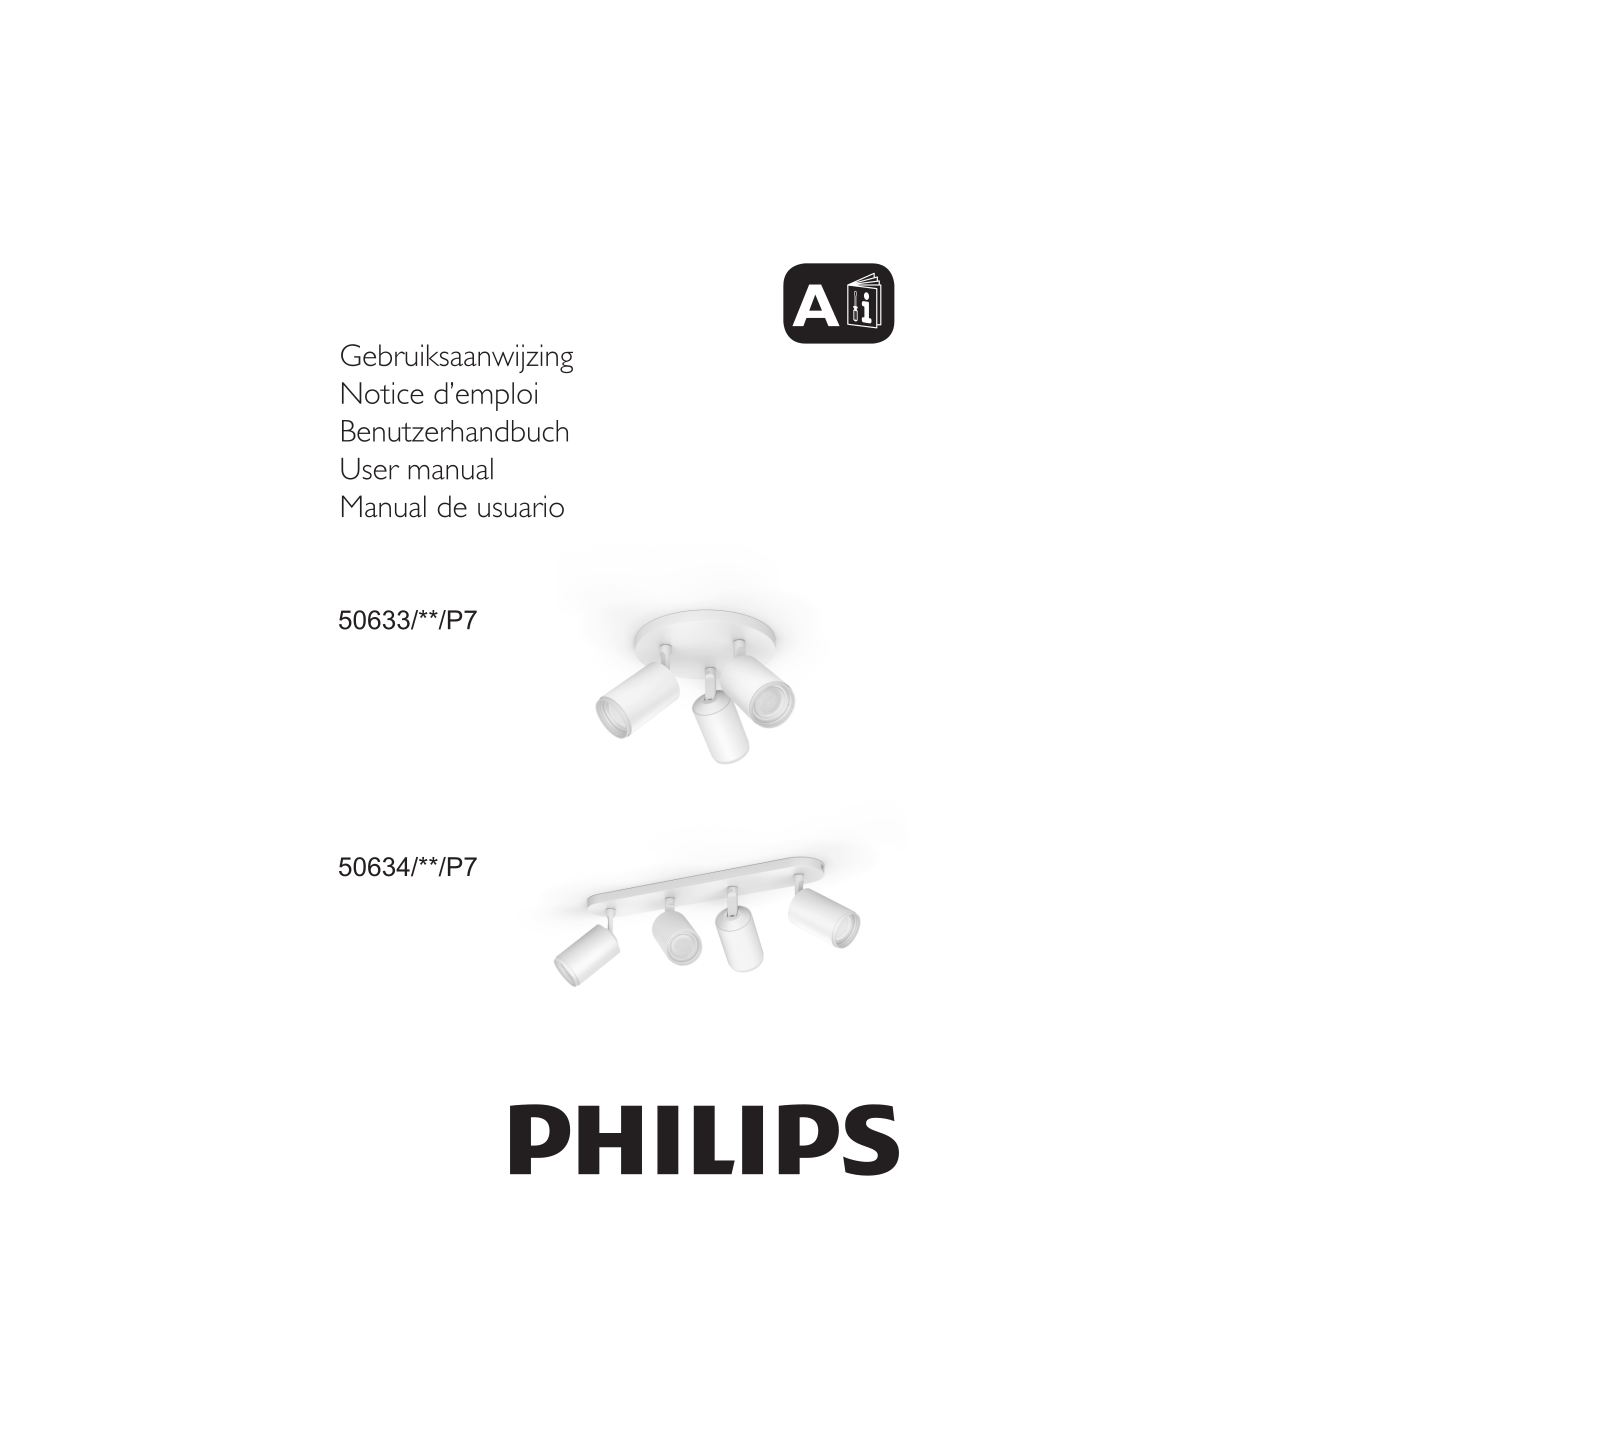 Philips 50633/**/P7, 50634/**/P7 User manual